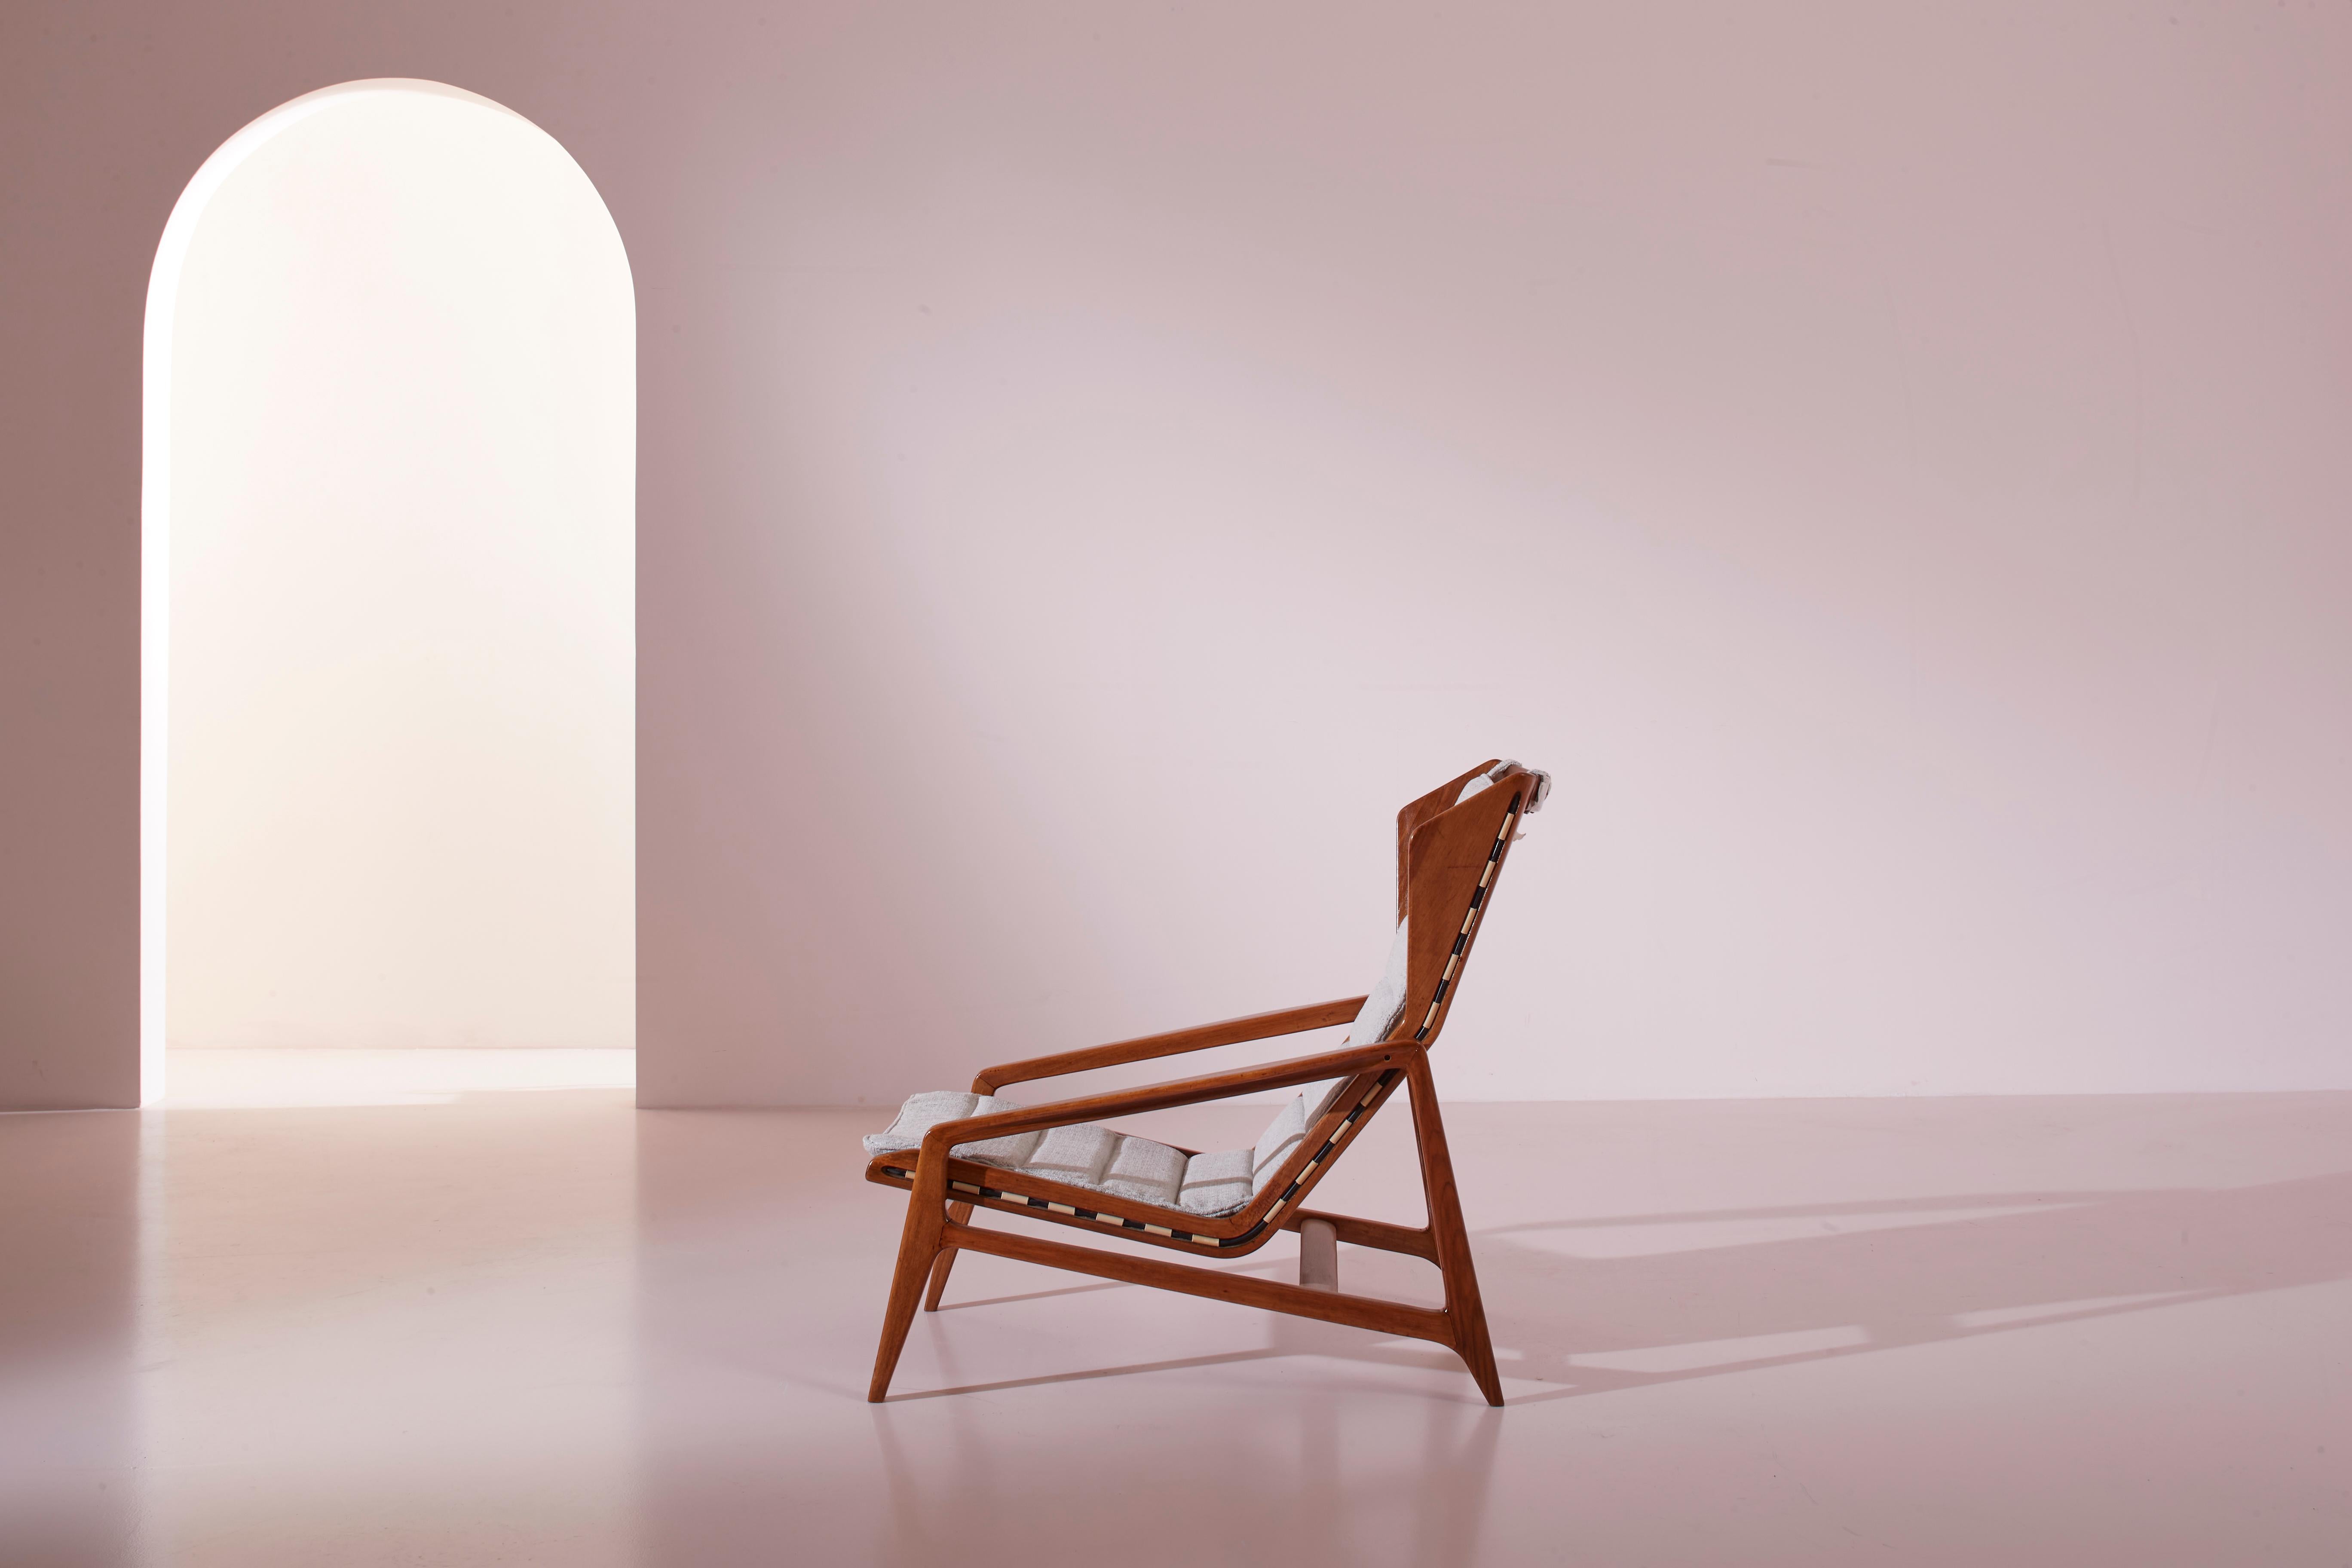 Rare fauteuil modèle 811, avec une structure en noyer et des élastiques, conçu par Gio Ponti et produit en Italie par Cassina en 1957.

Il existe des objets datant des décennies passées qui, par leur style et leur conception, évoquent immédiatement